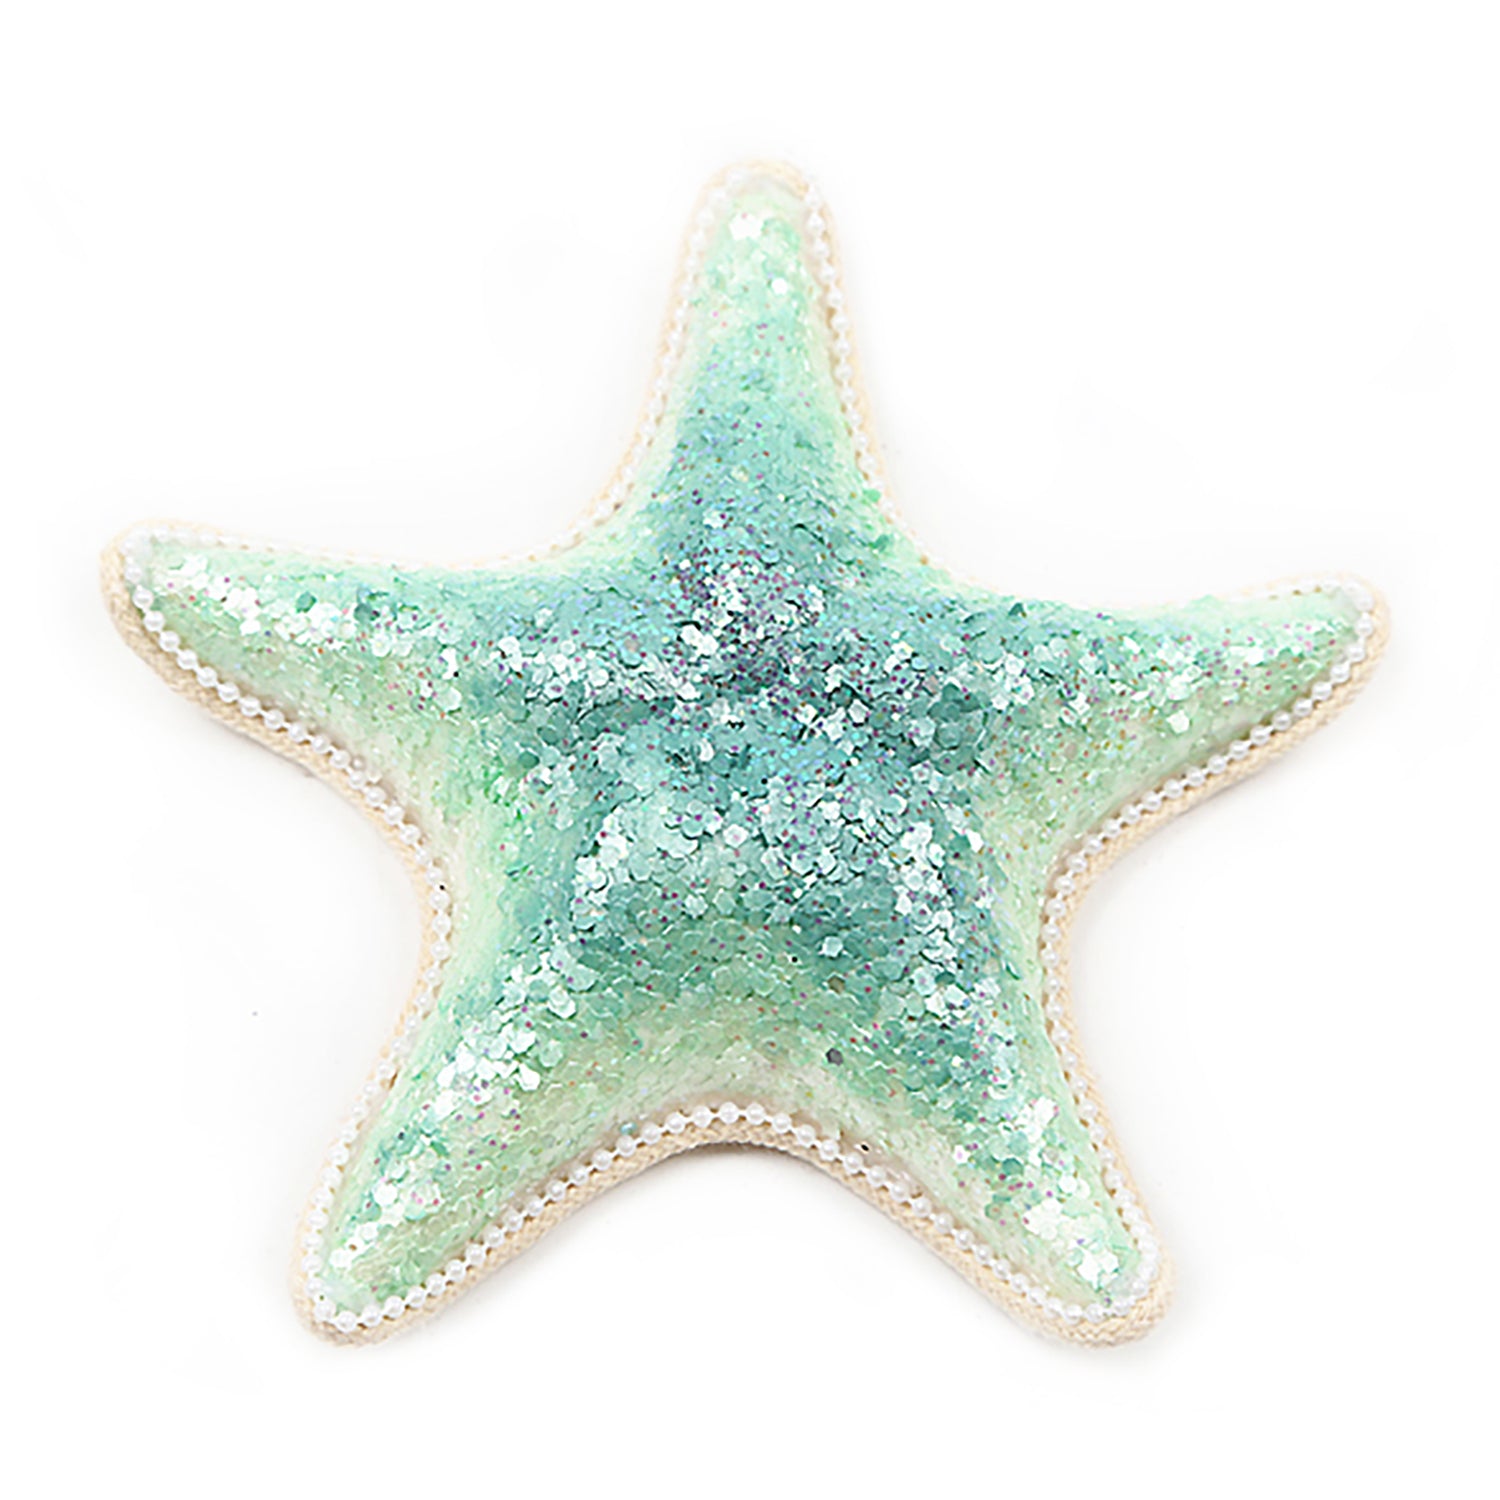 Aqua Starfish with Sequins Ornament